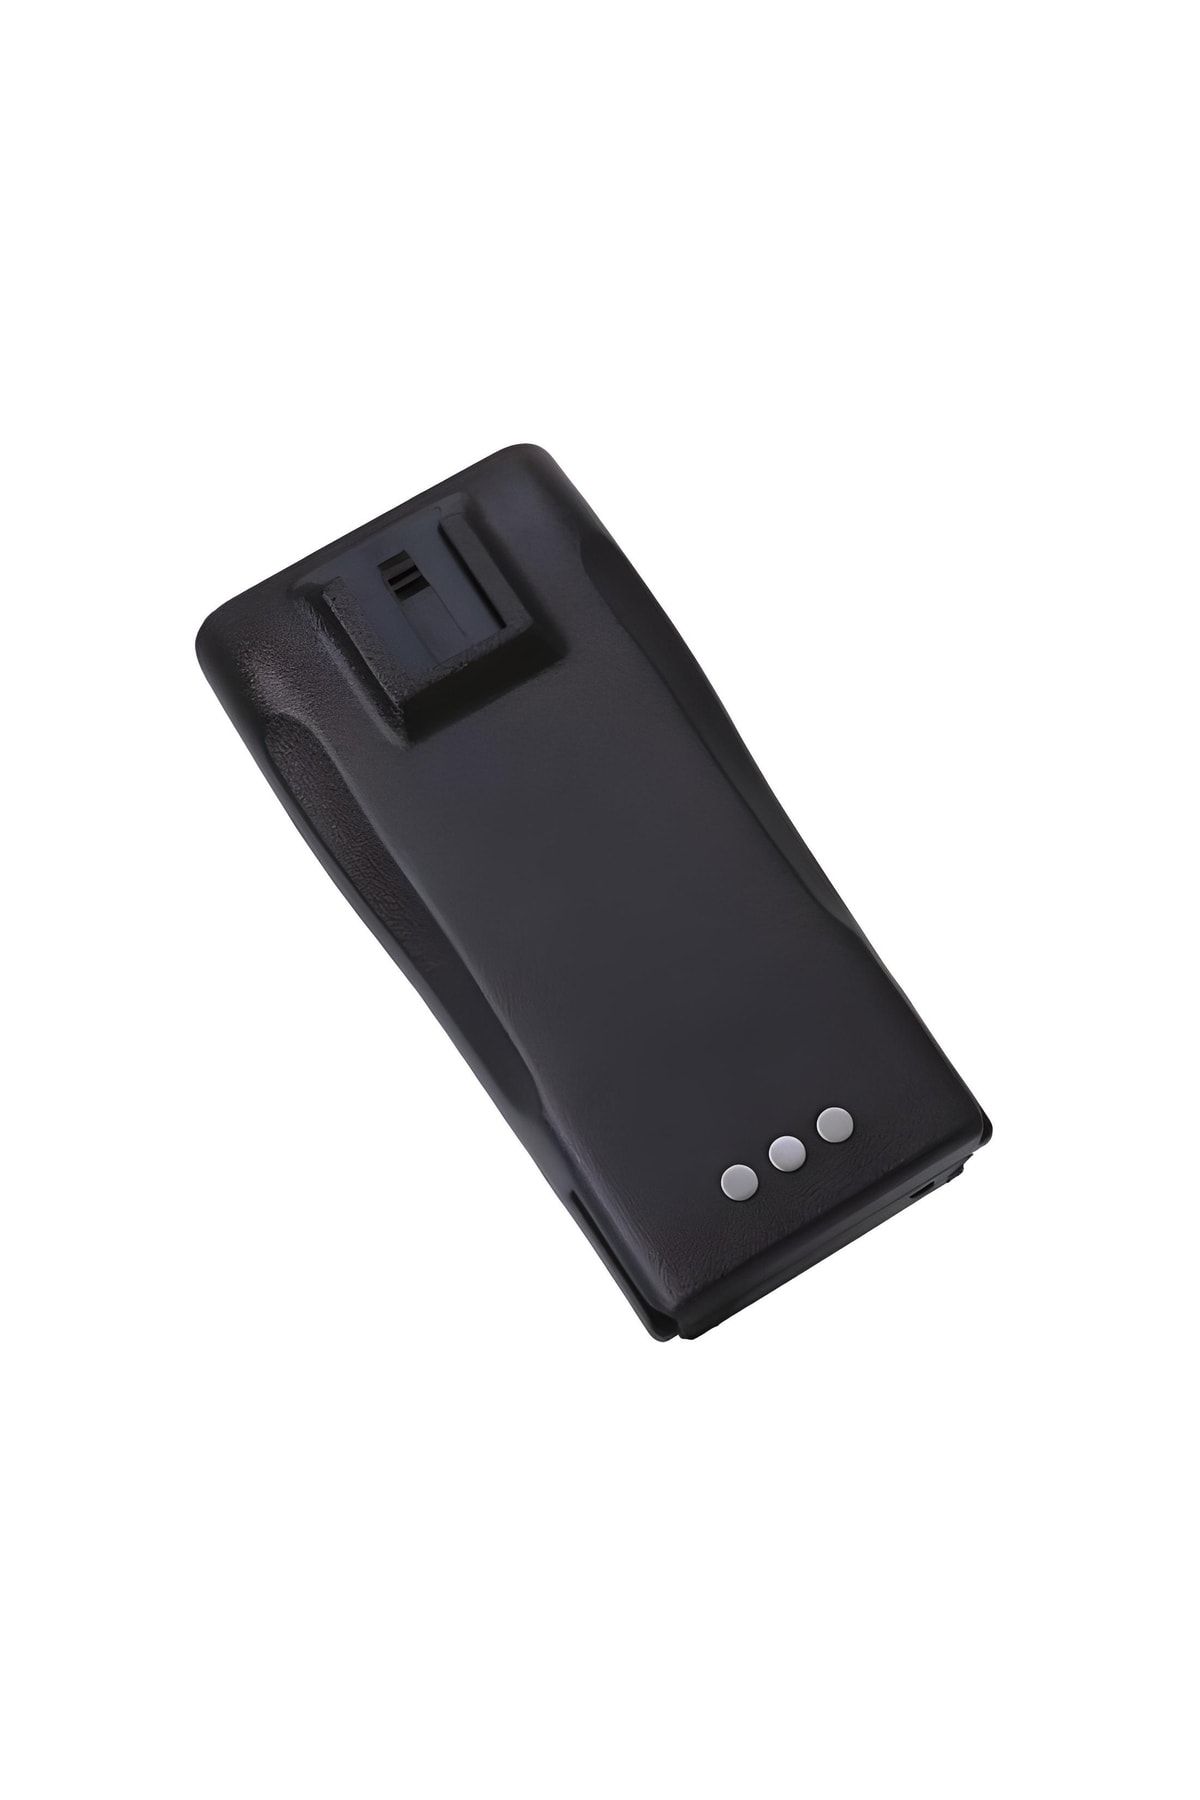 Motorola Cp040 /dp1400-1400 Mah Telsiz Bataryası ( Orjinal Ürün )